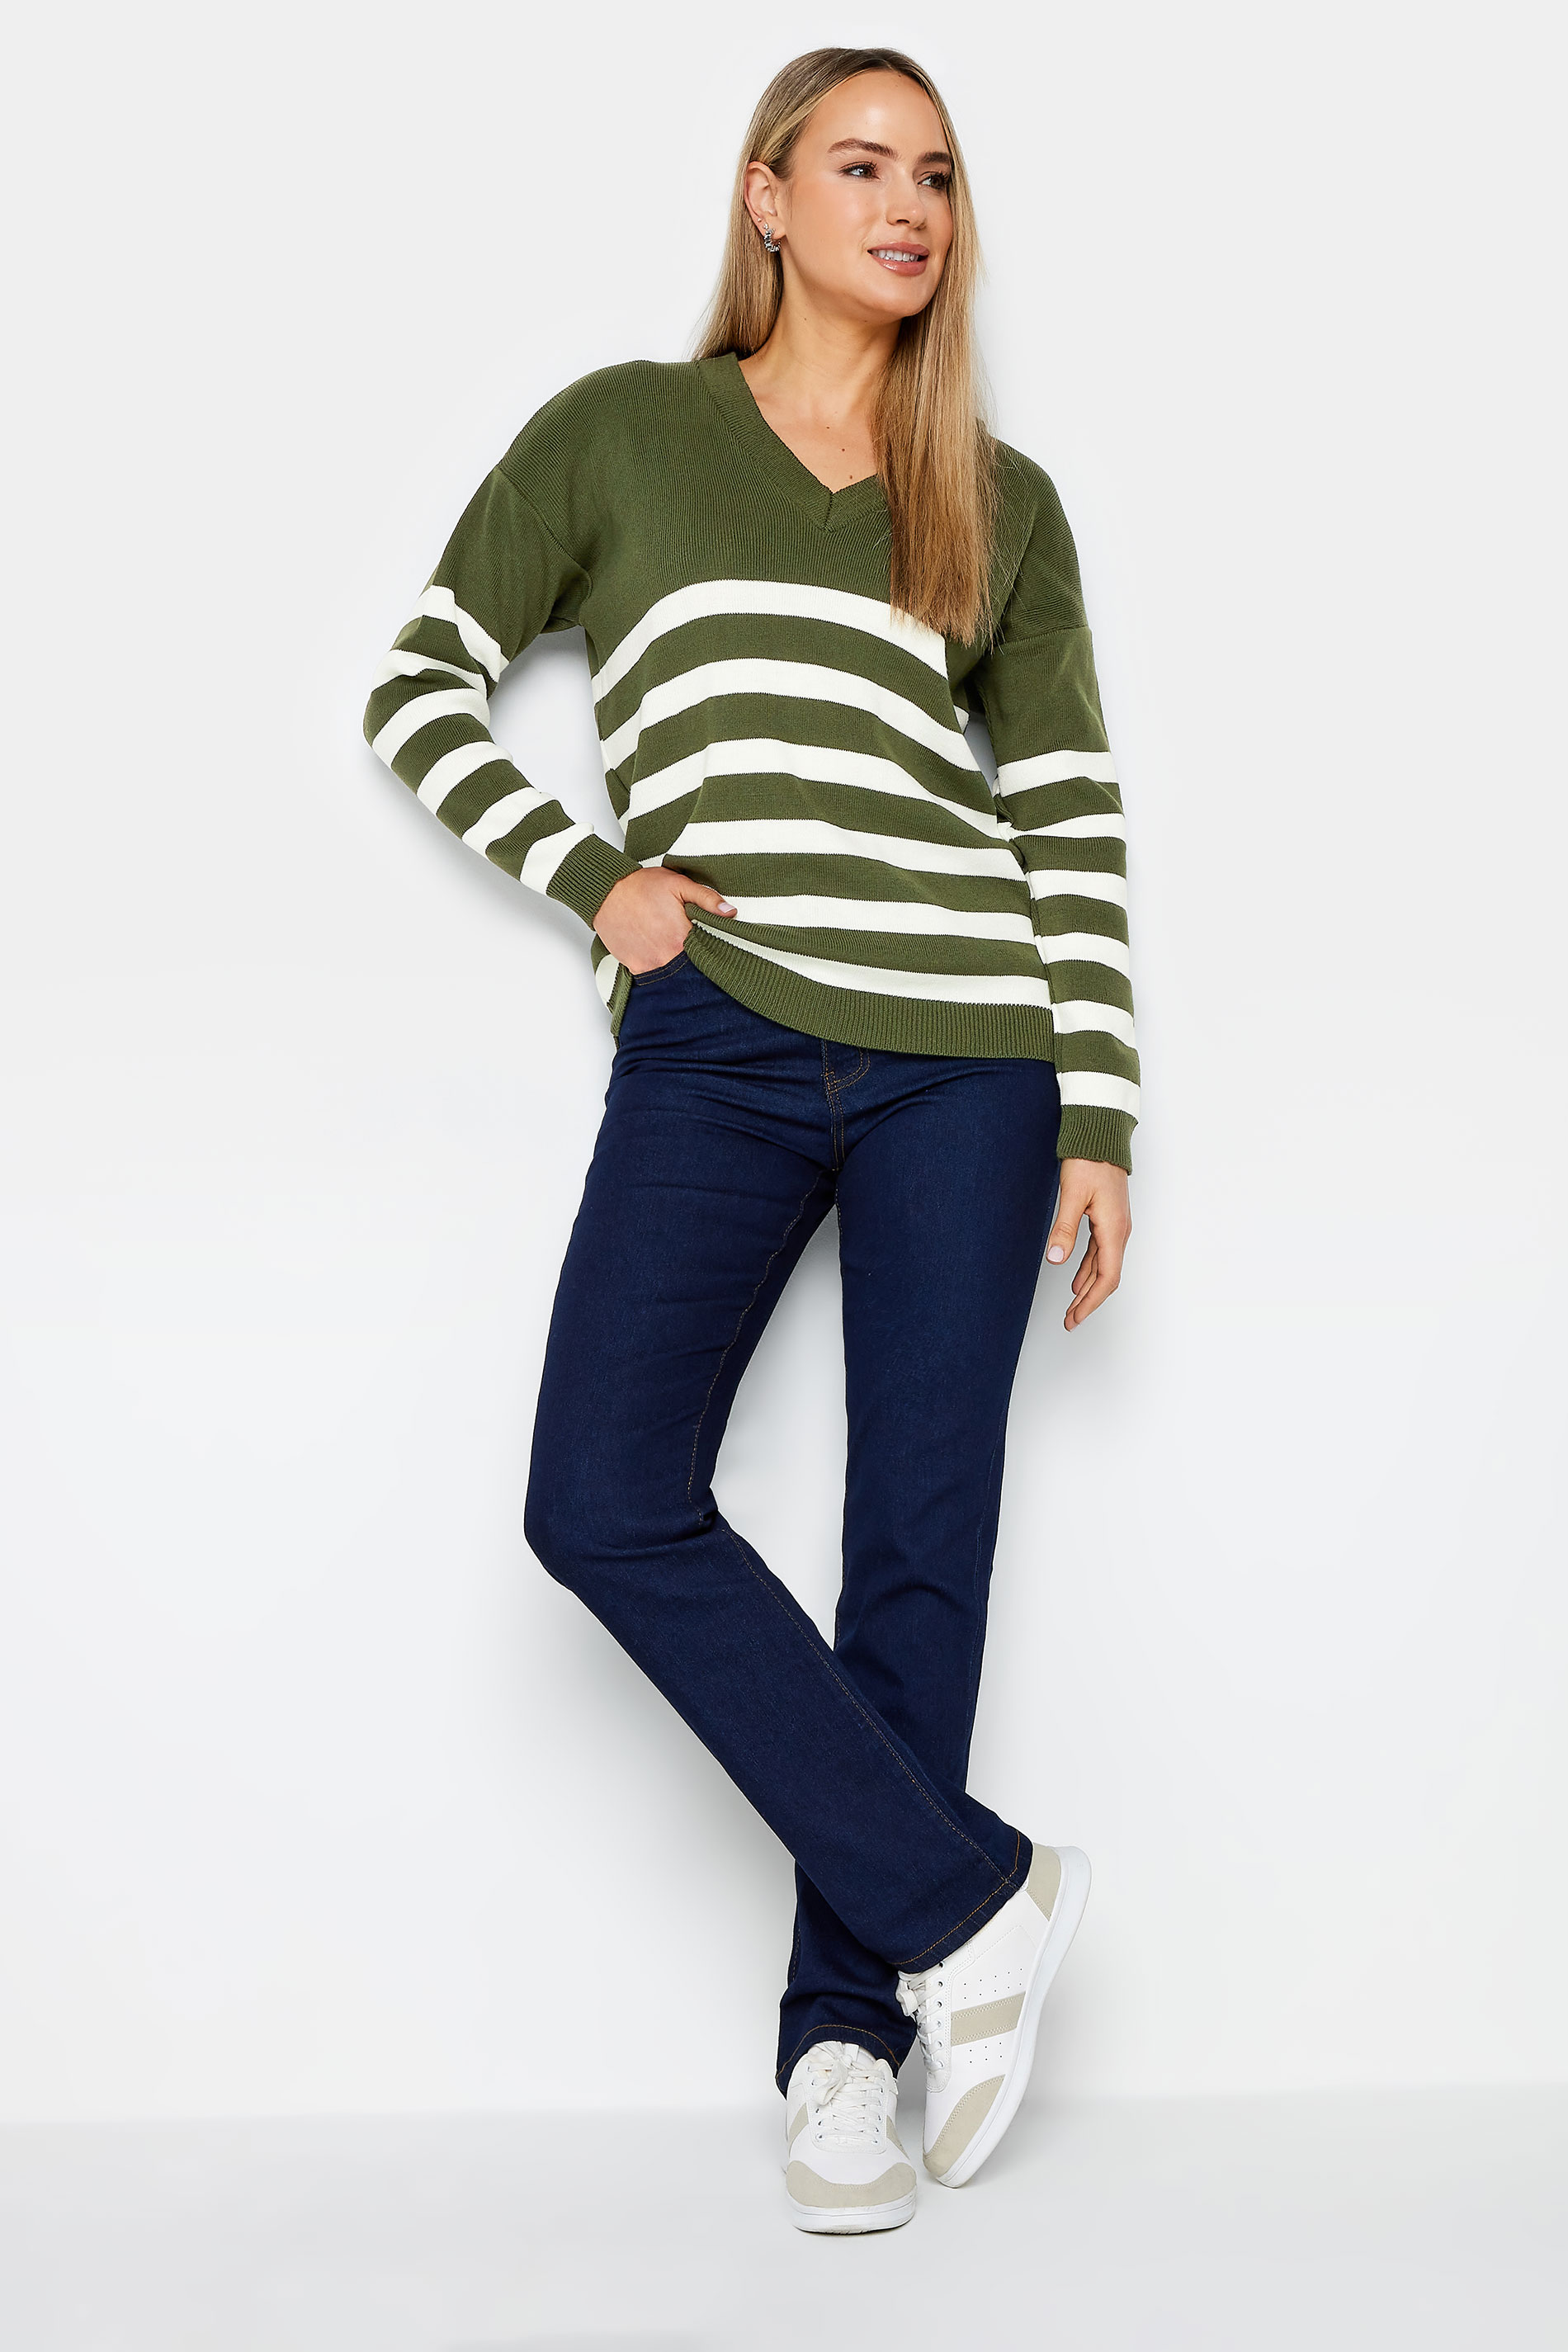 LTS Tall Khaki Green Stripe Jumper | Long Tall Sally  2